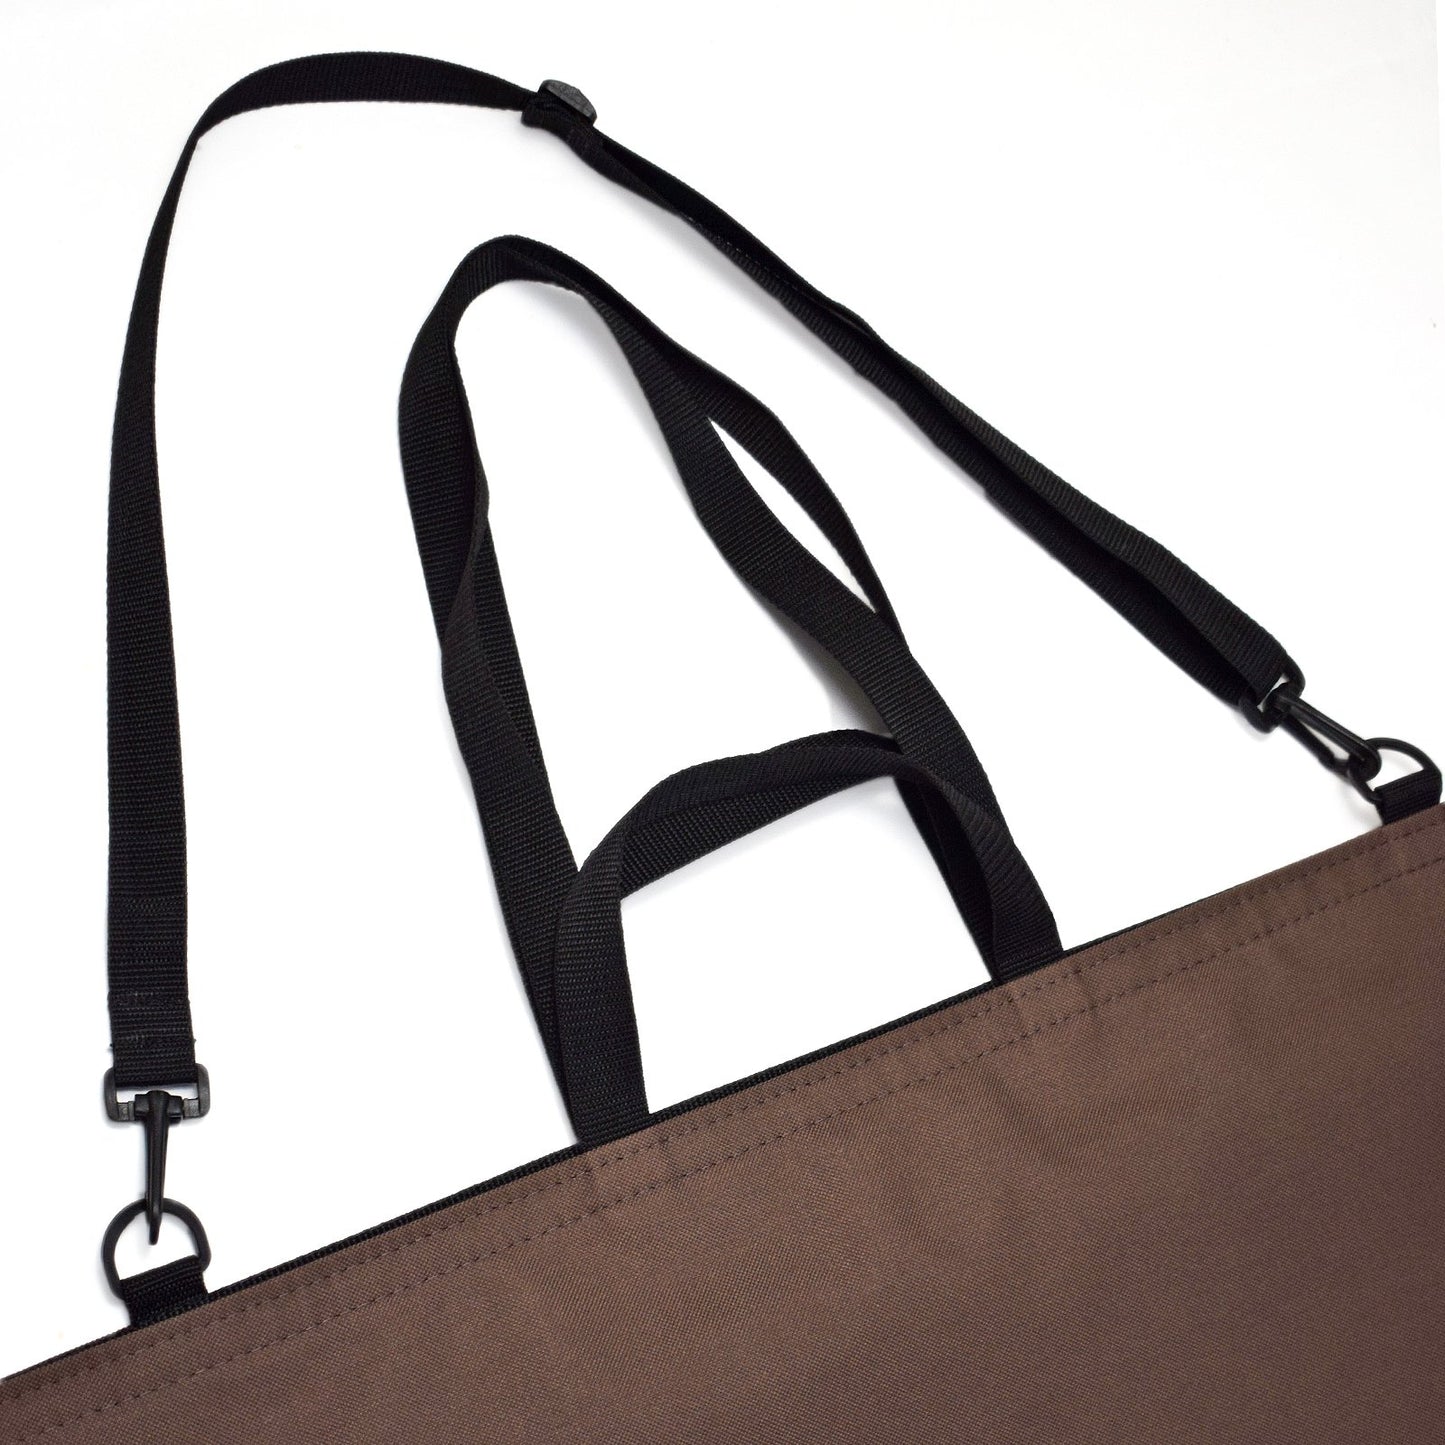 XL Tote Bag Shopper | BROWN